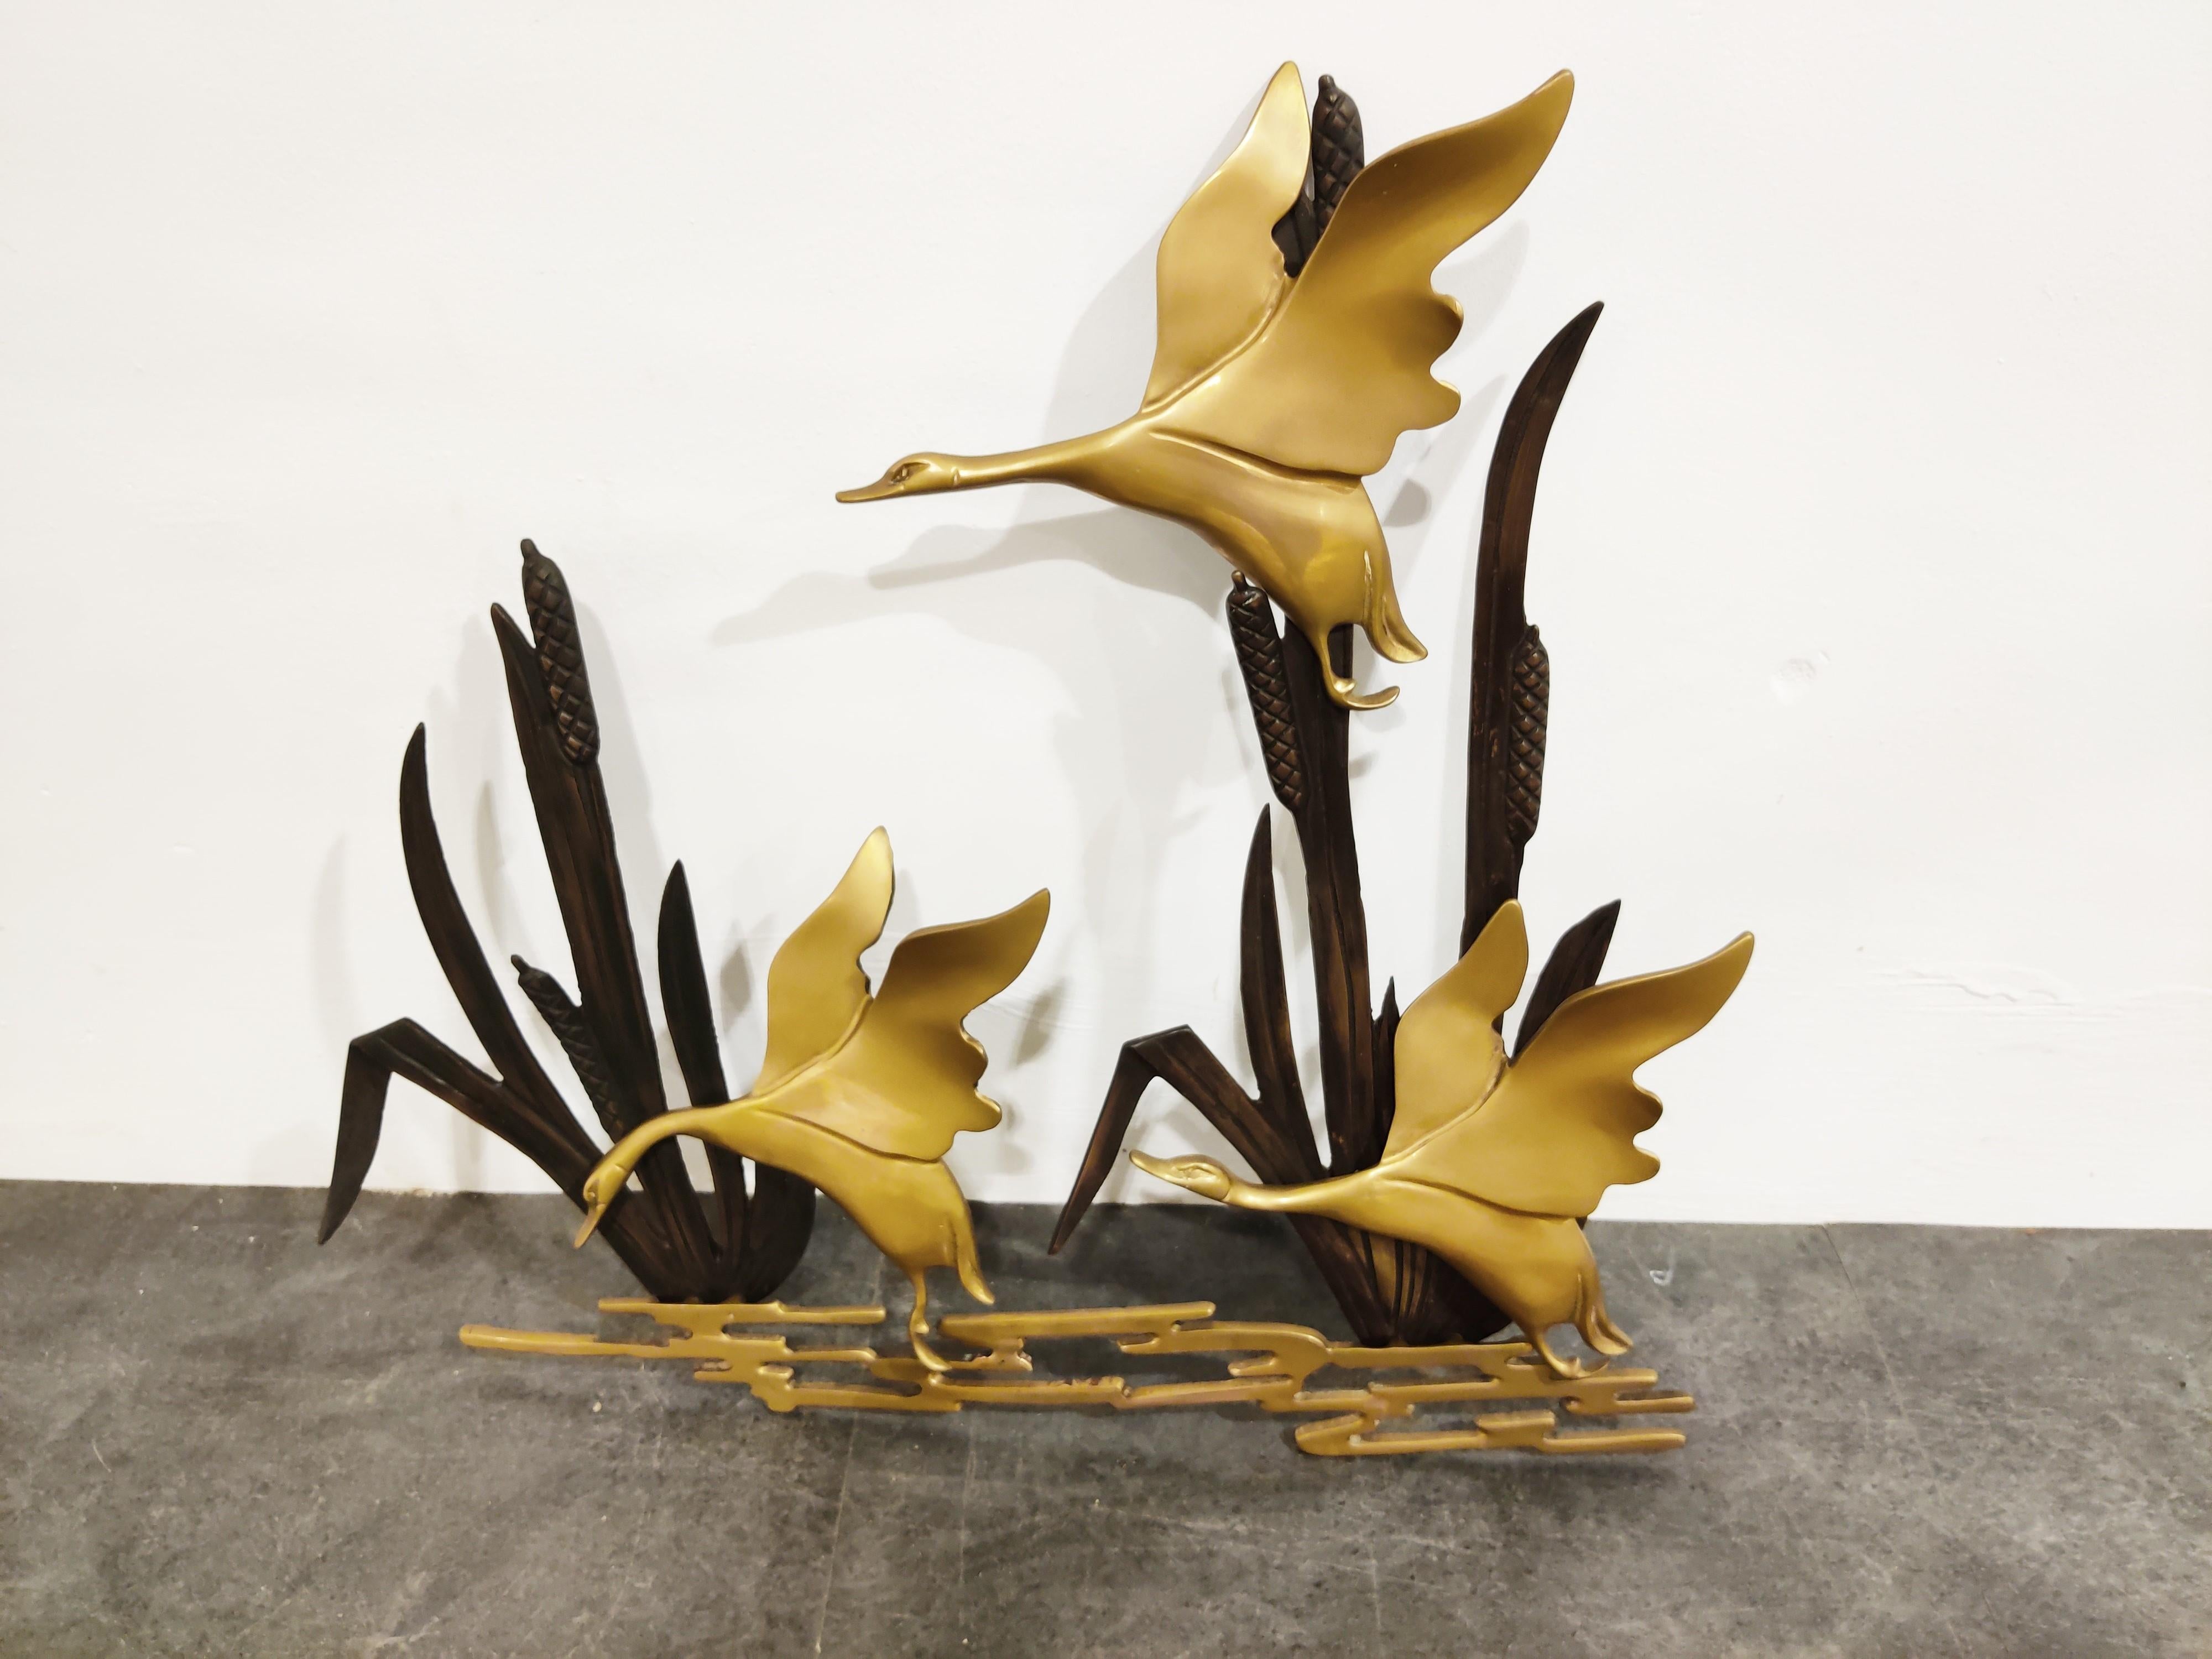 Midcentury brass flying goose/duck sculpture.

Minimalist design.

Good condition.

1970s, Belgium

Measures: Height 56cm/22.04